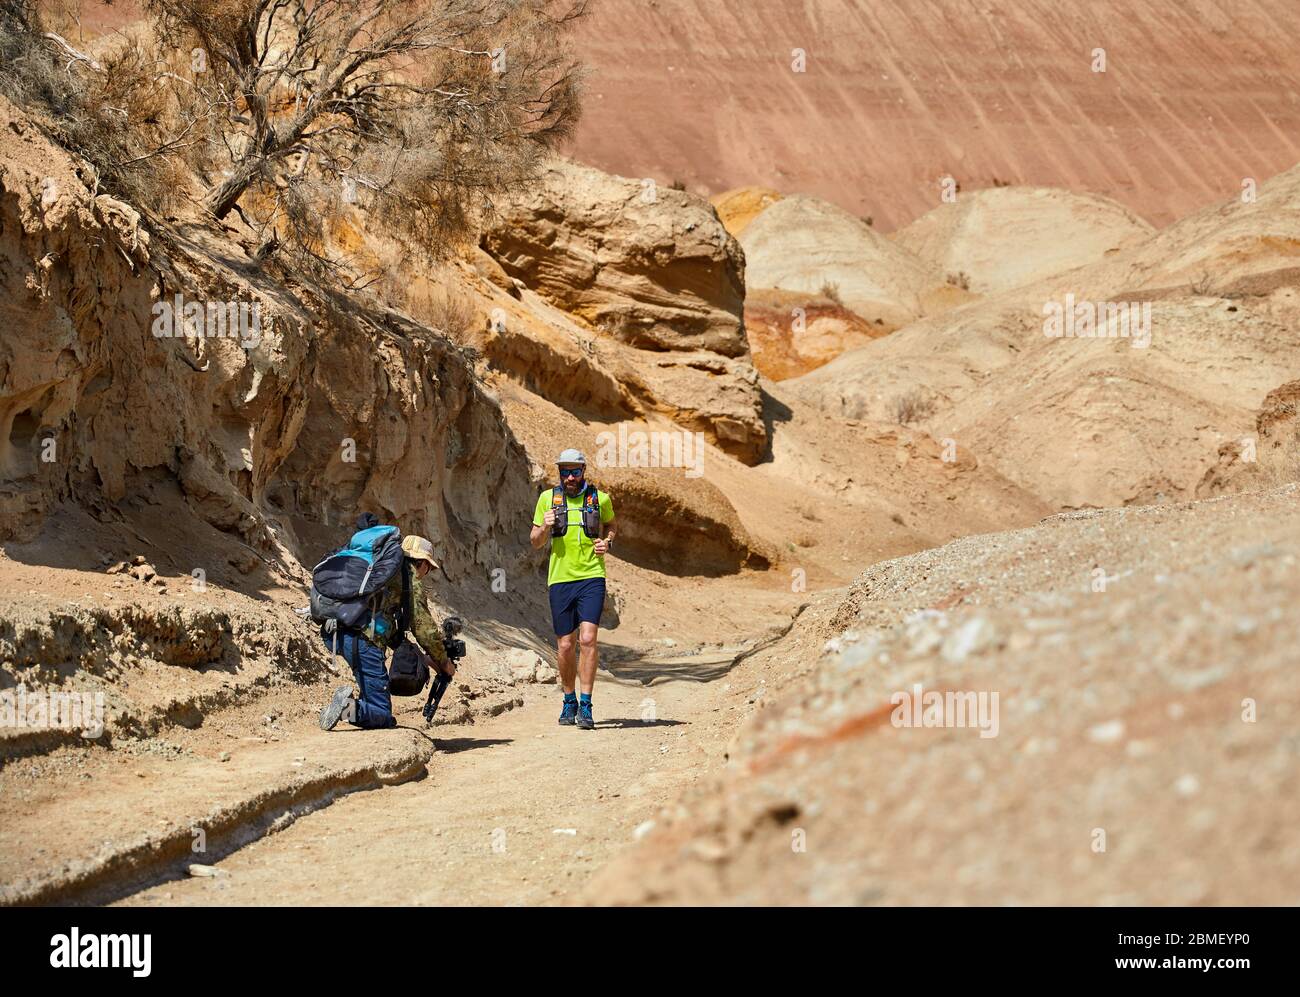 Prise de cinéaste documentaire sur l'athlète coureur sur la piste sauvage de montagnes d'argile dans le désert Banque D'Images